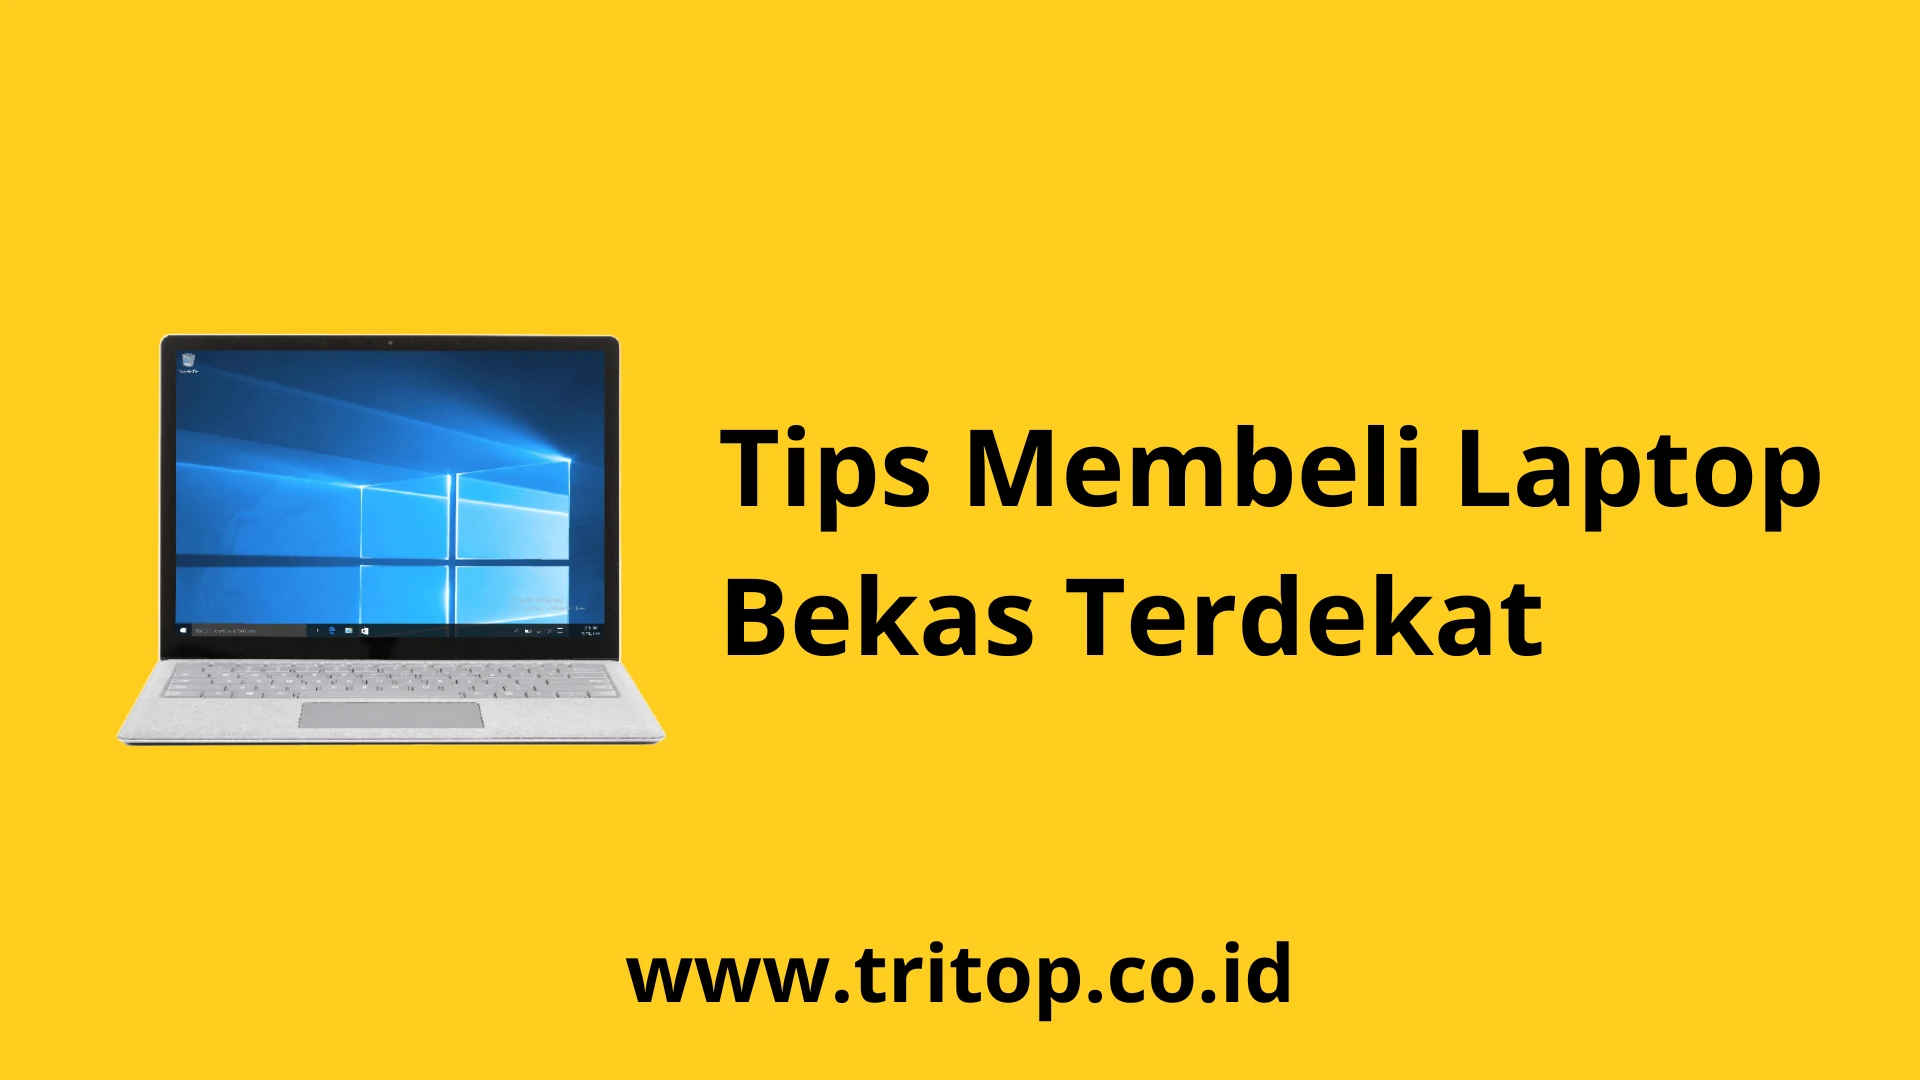 Laptop Bekas Terdekat Tritop.co.id